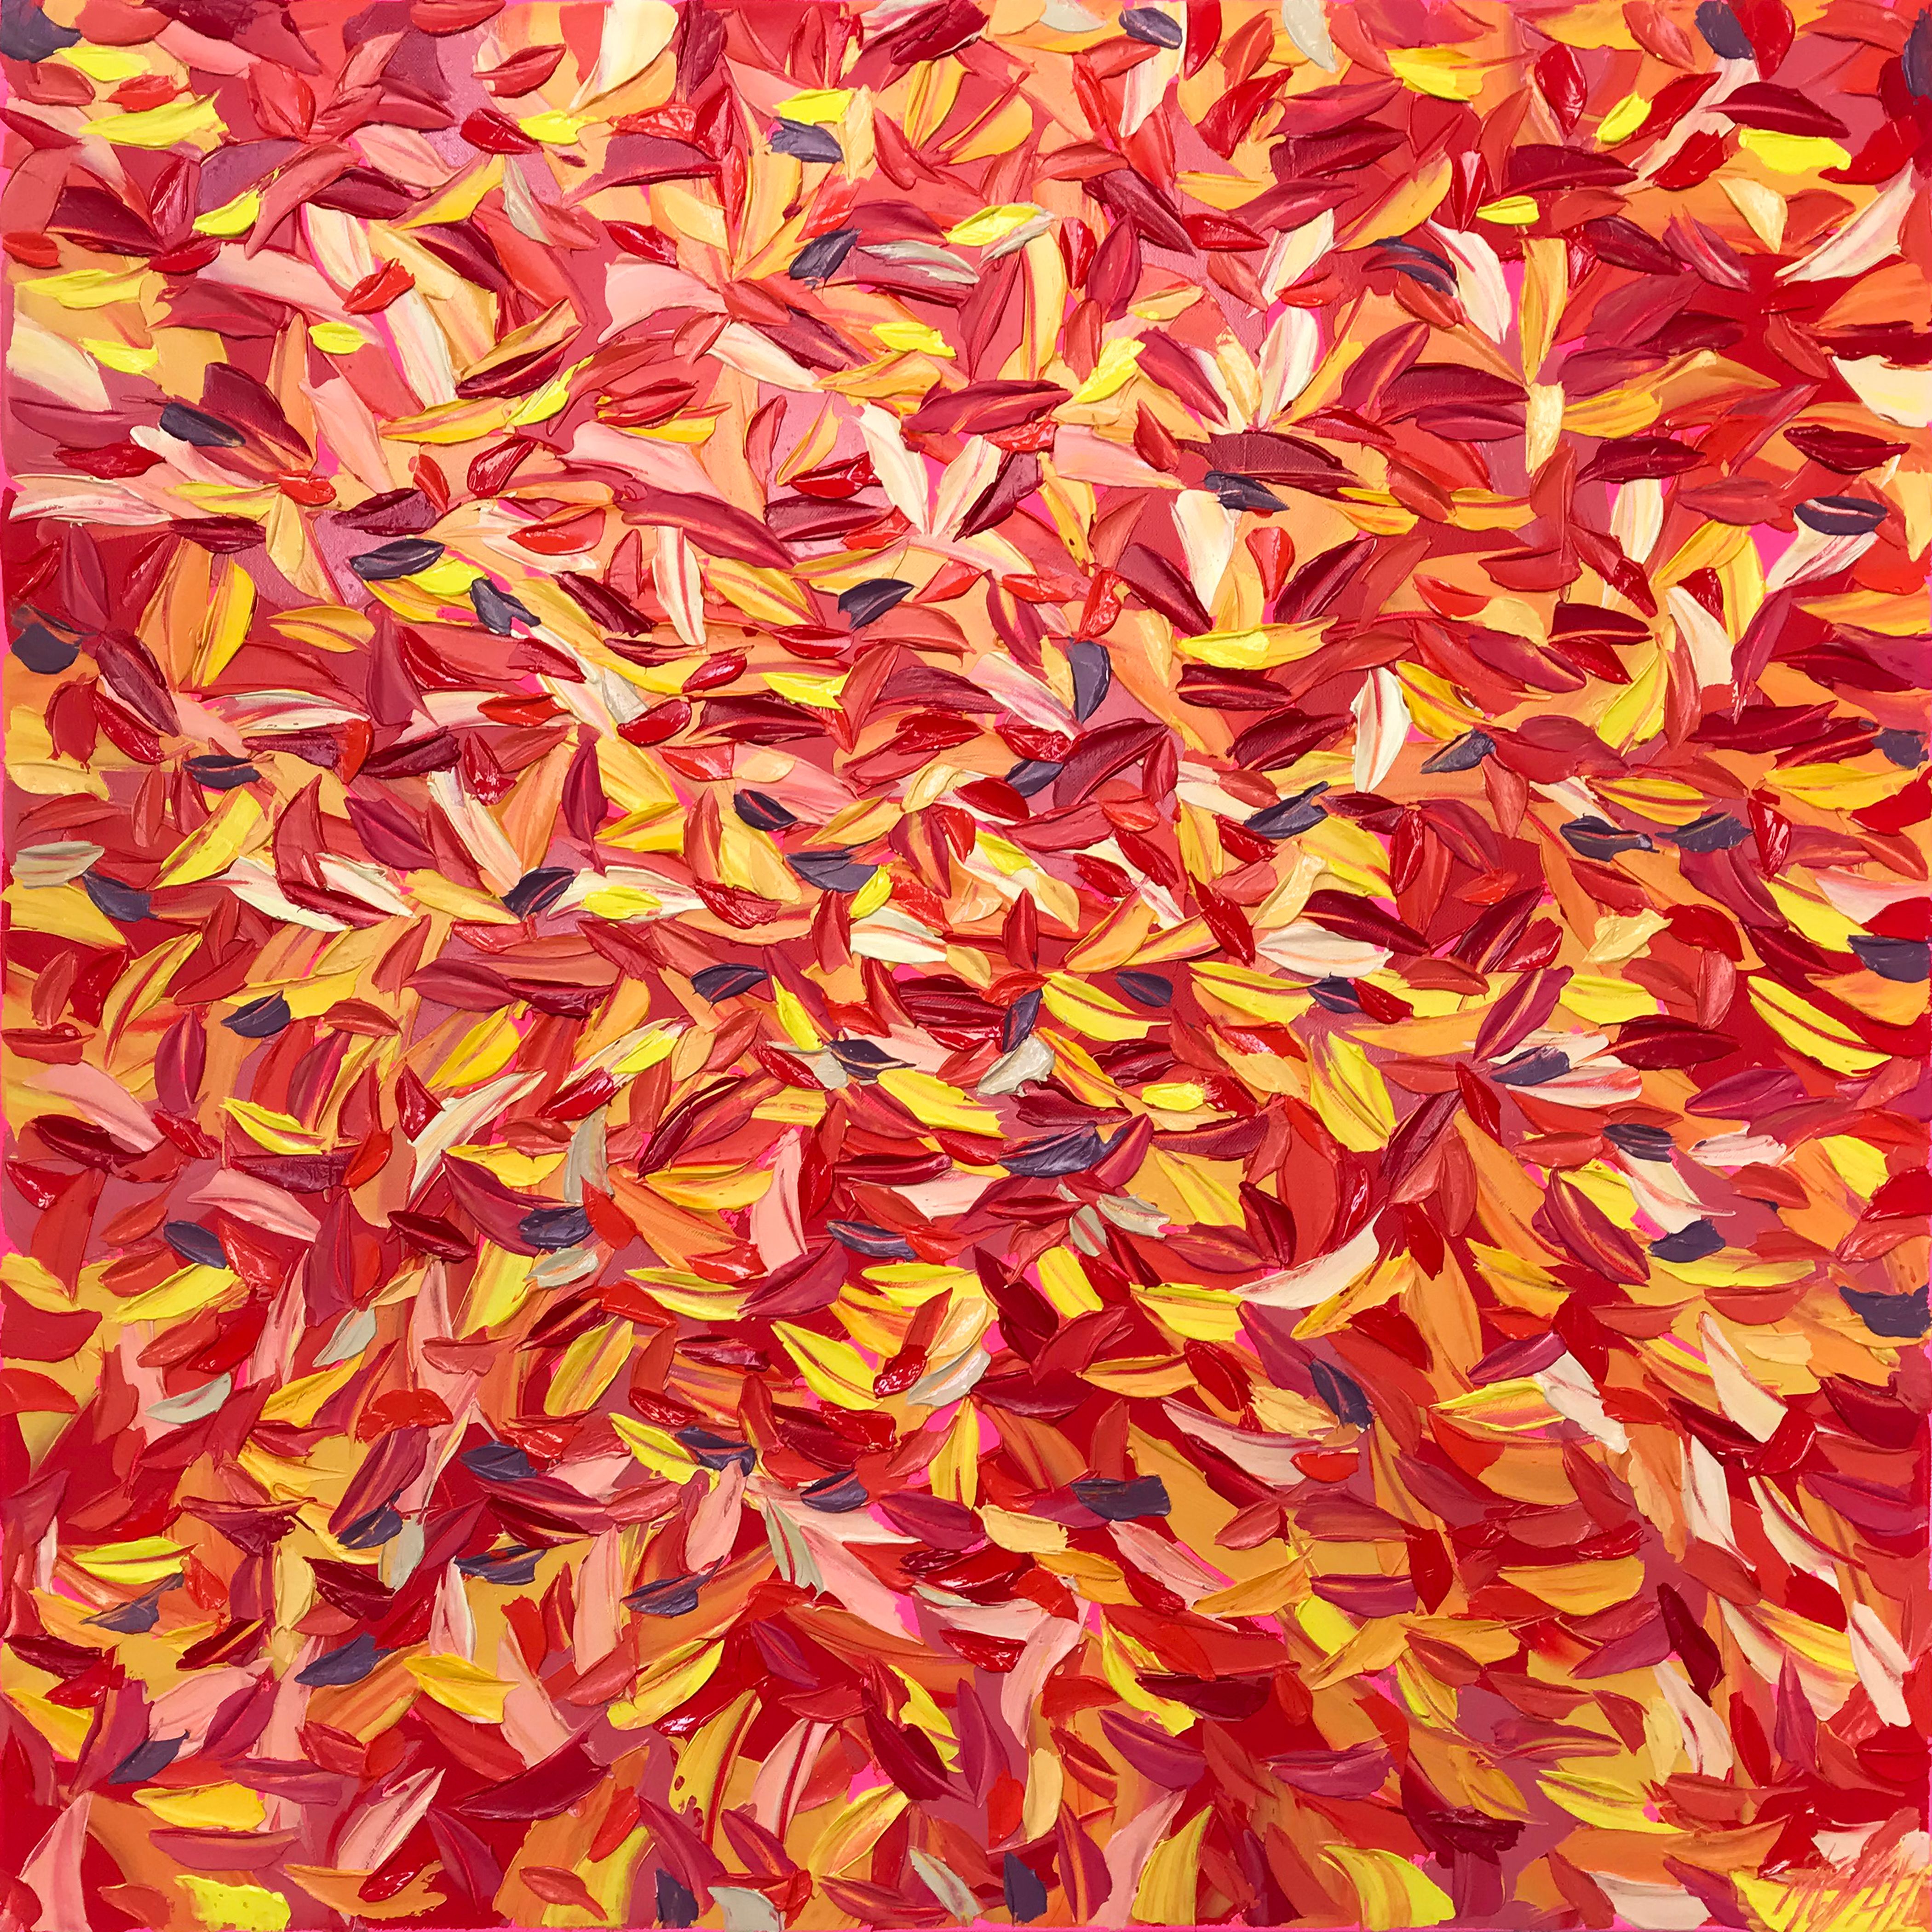 奥利弗-梅萨的 "欣喜若狂 "彩色树叶抽象画